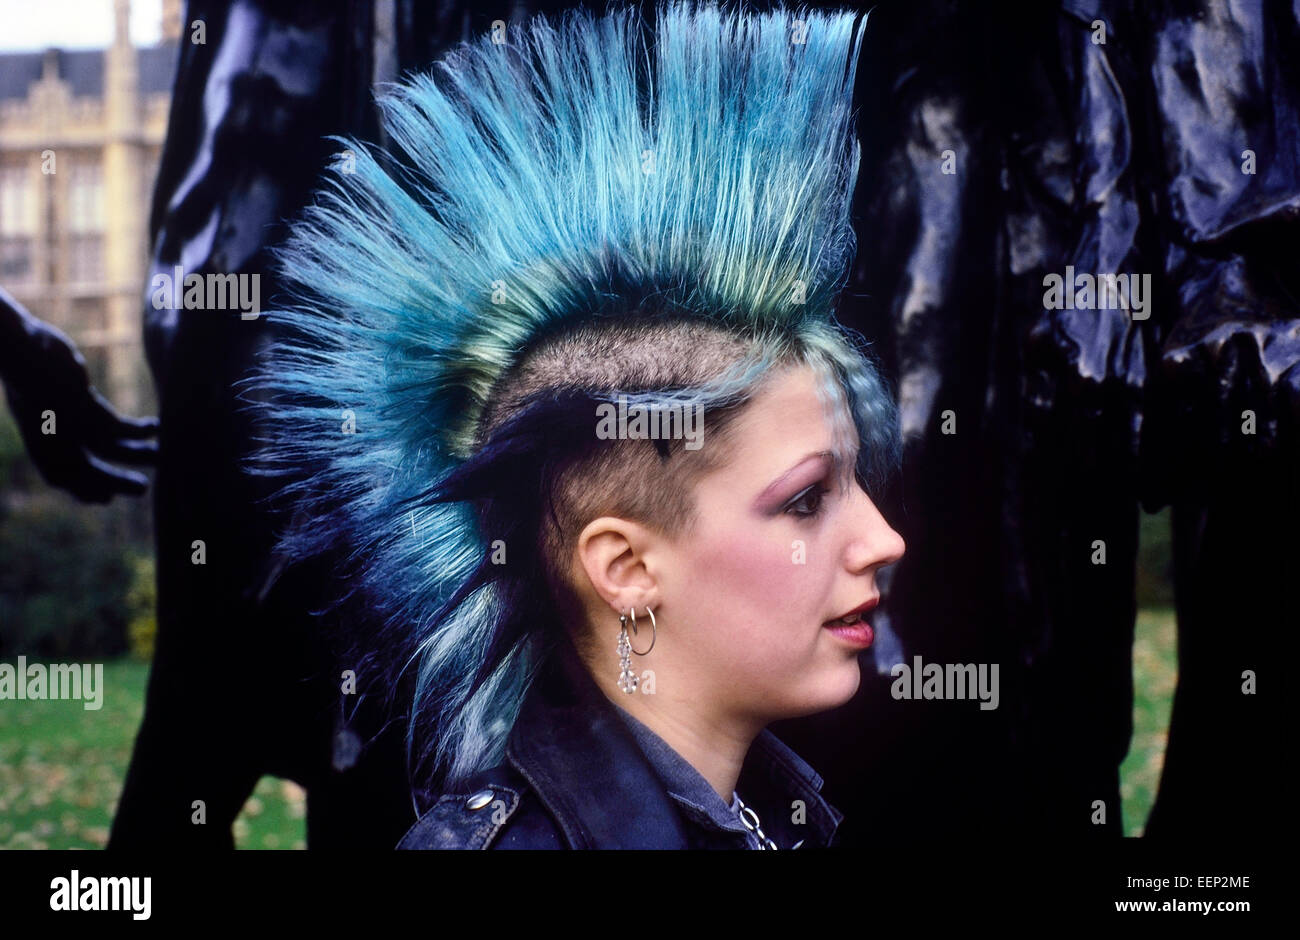 blue hair crust punk